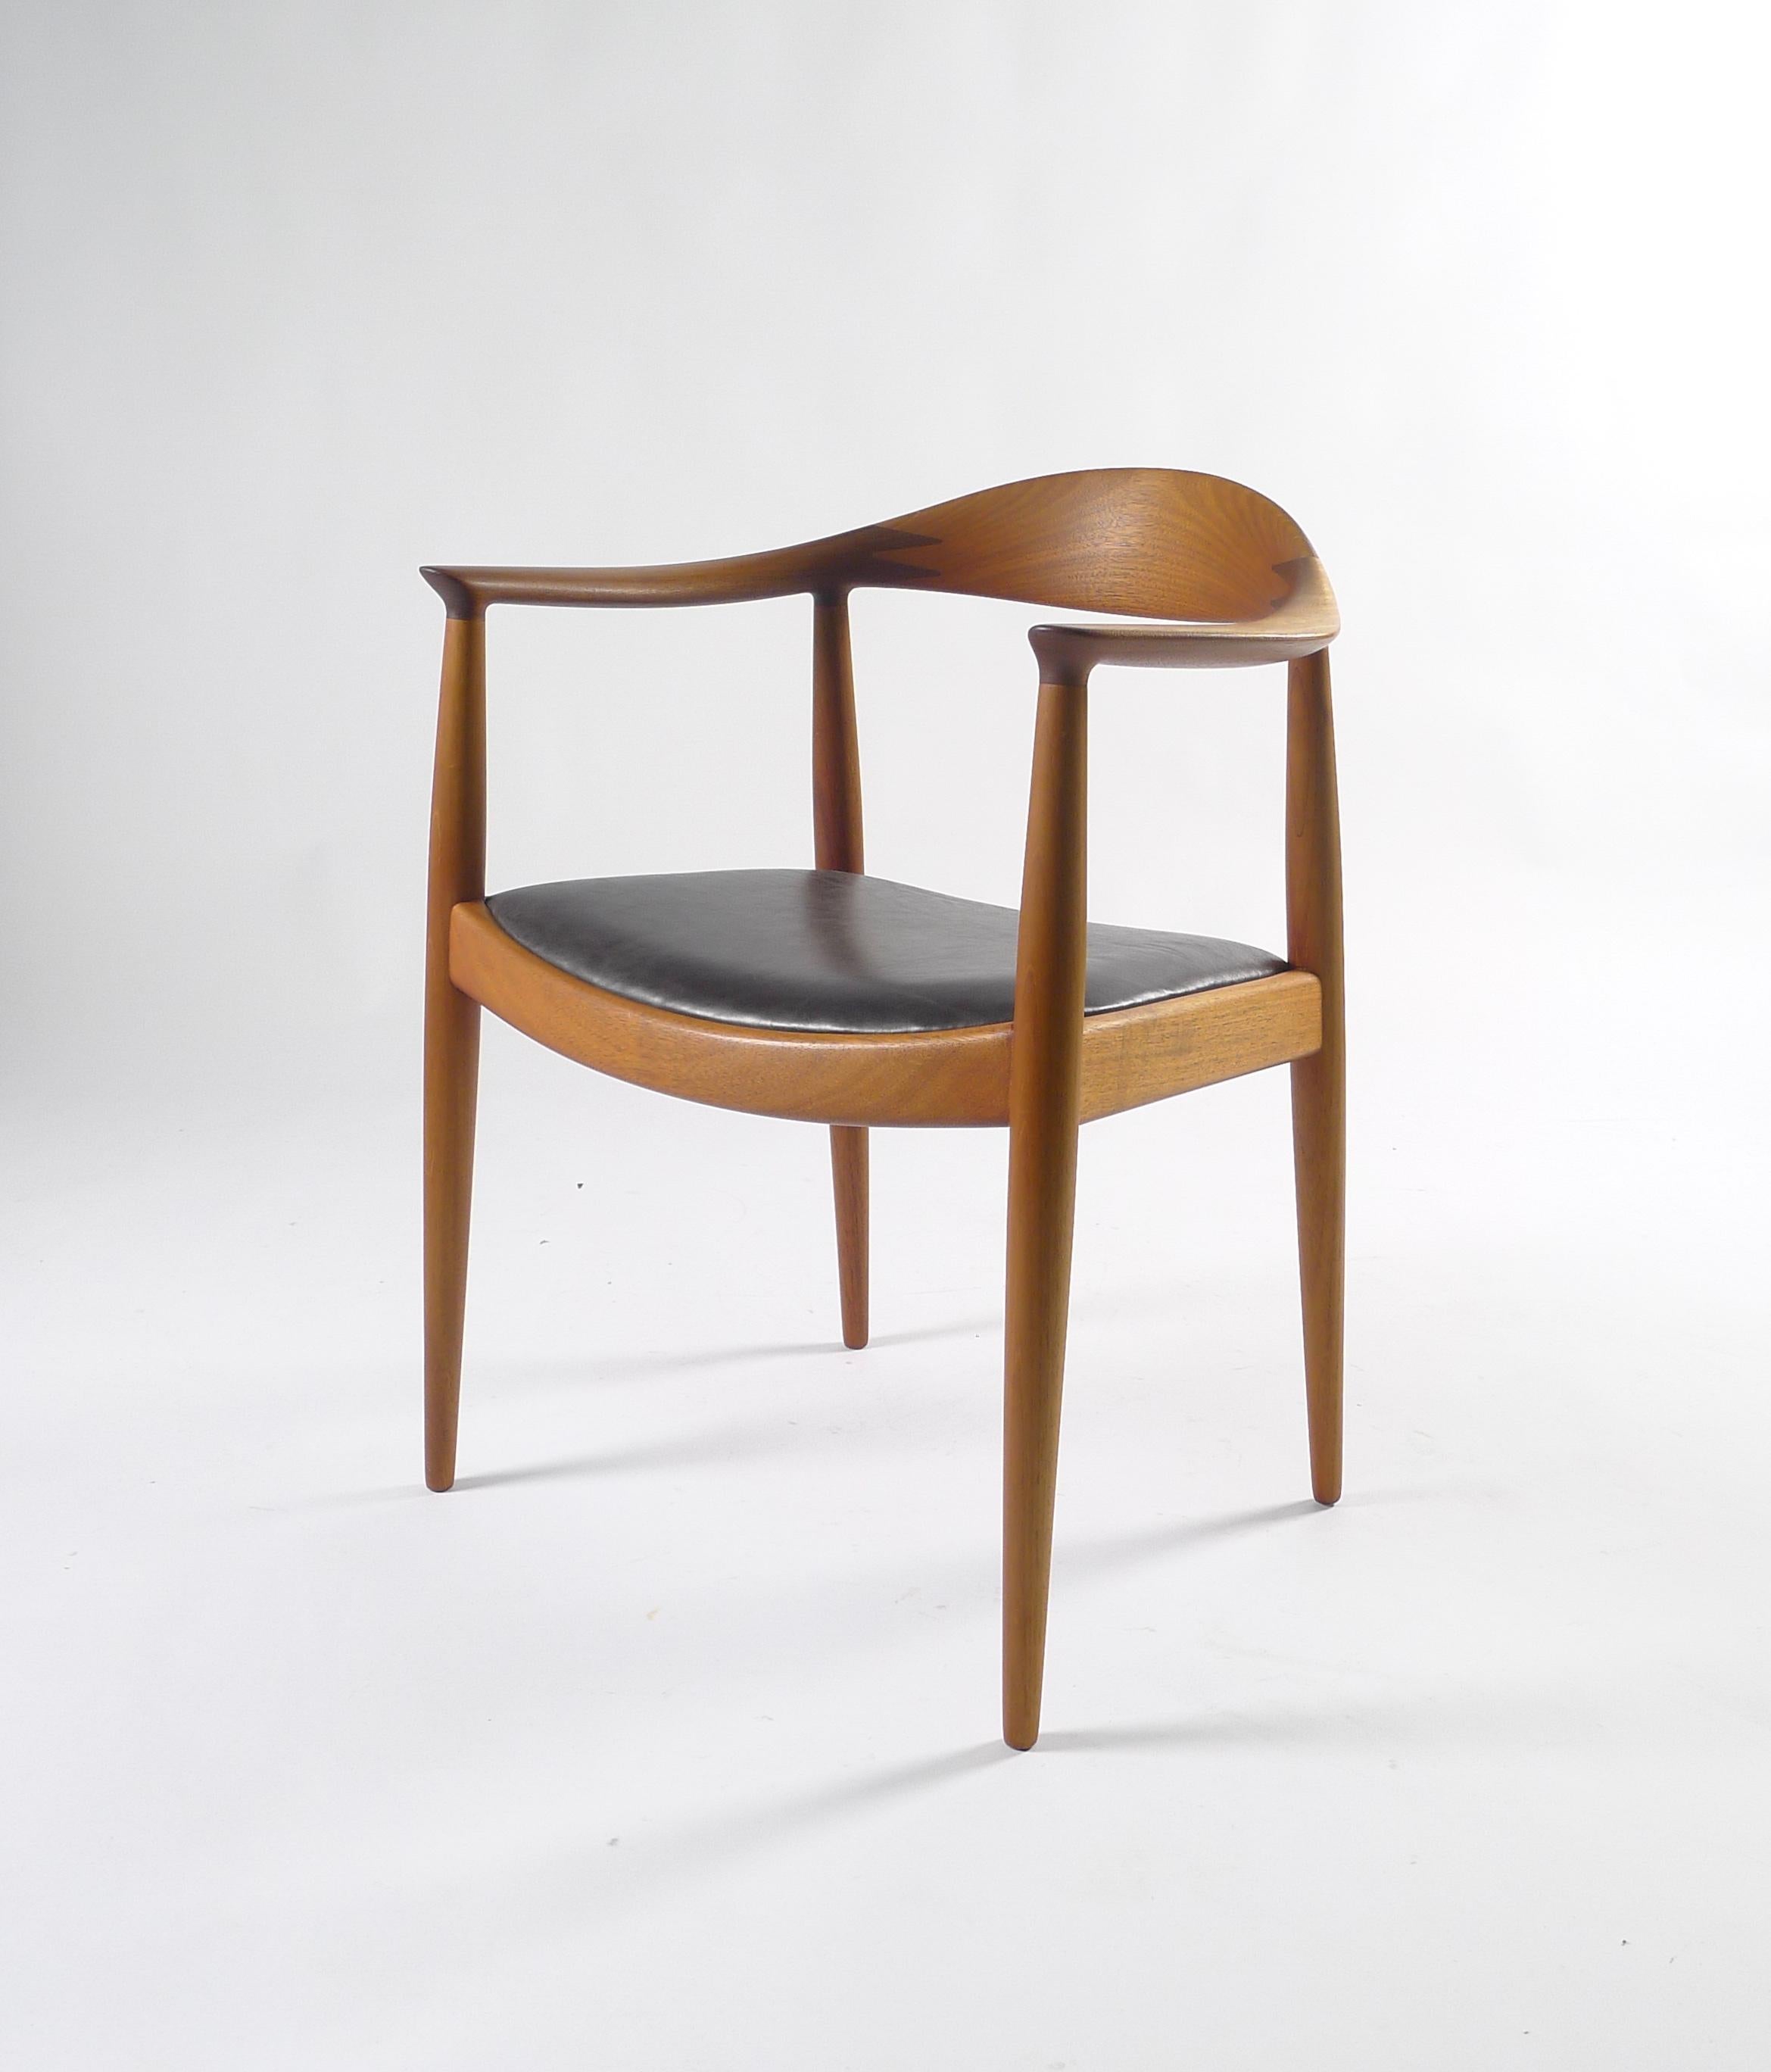 Hans J Wegner, la chaise ou chaise ronde, modèle JH503, conçue en 1949, fabriquée par Johannes Hansen, Danemark

Cadre en teck avec dossier incurvé, siège en cuir noir rembourré.

Marque estampillée JOHANNES HANSEN/COPENHAGUE/DENMARK.

Connu